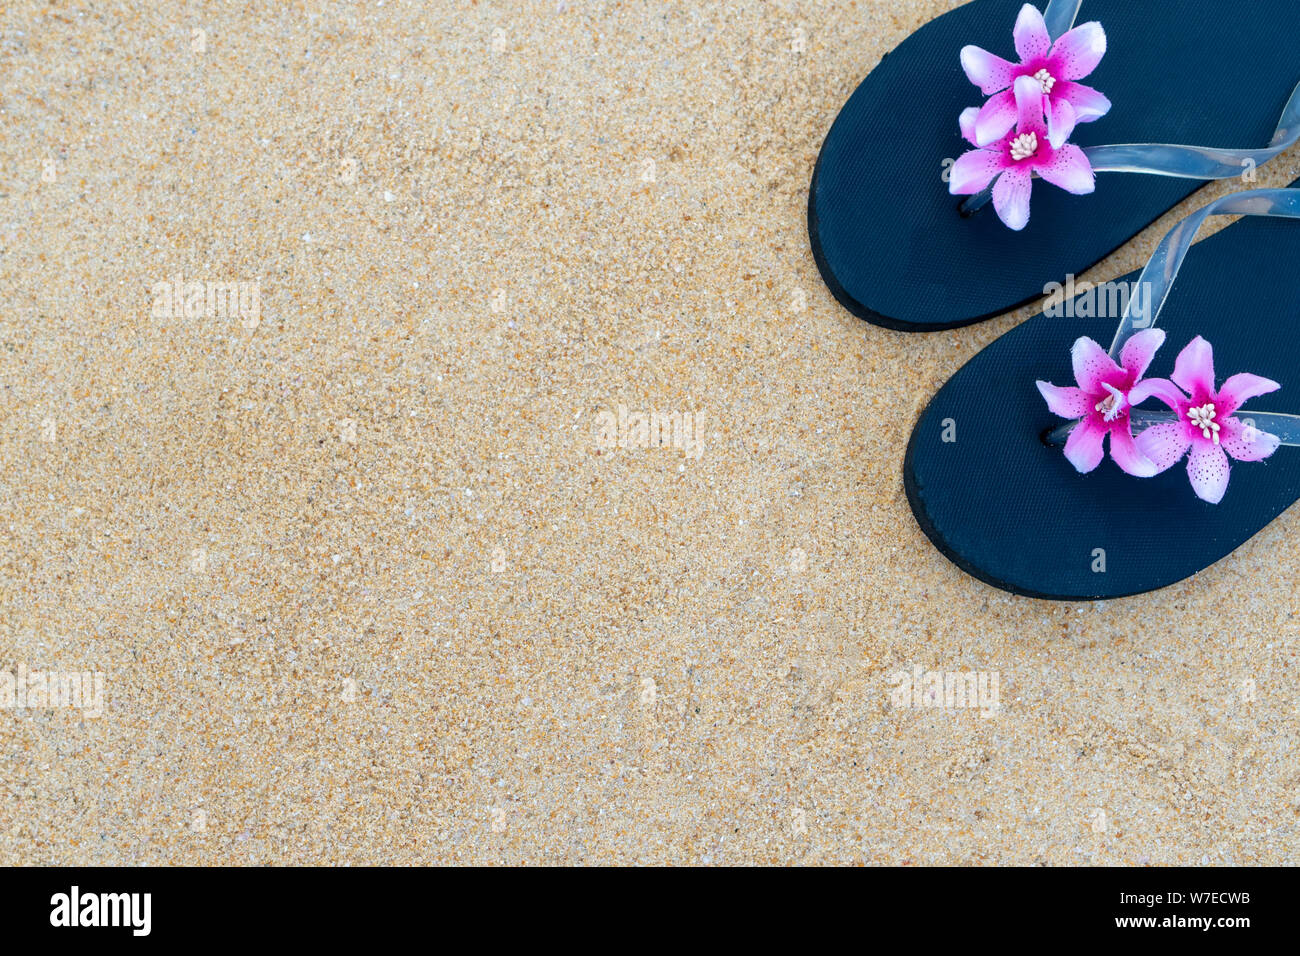 Colorato flip flop sulla spiaggia sabbiosa. Pantofole nero con un fiore rosa sulla sabbia. Il concetto di estate e di viaggio. Foto Stock